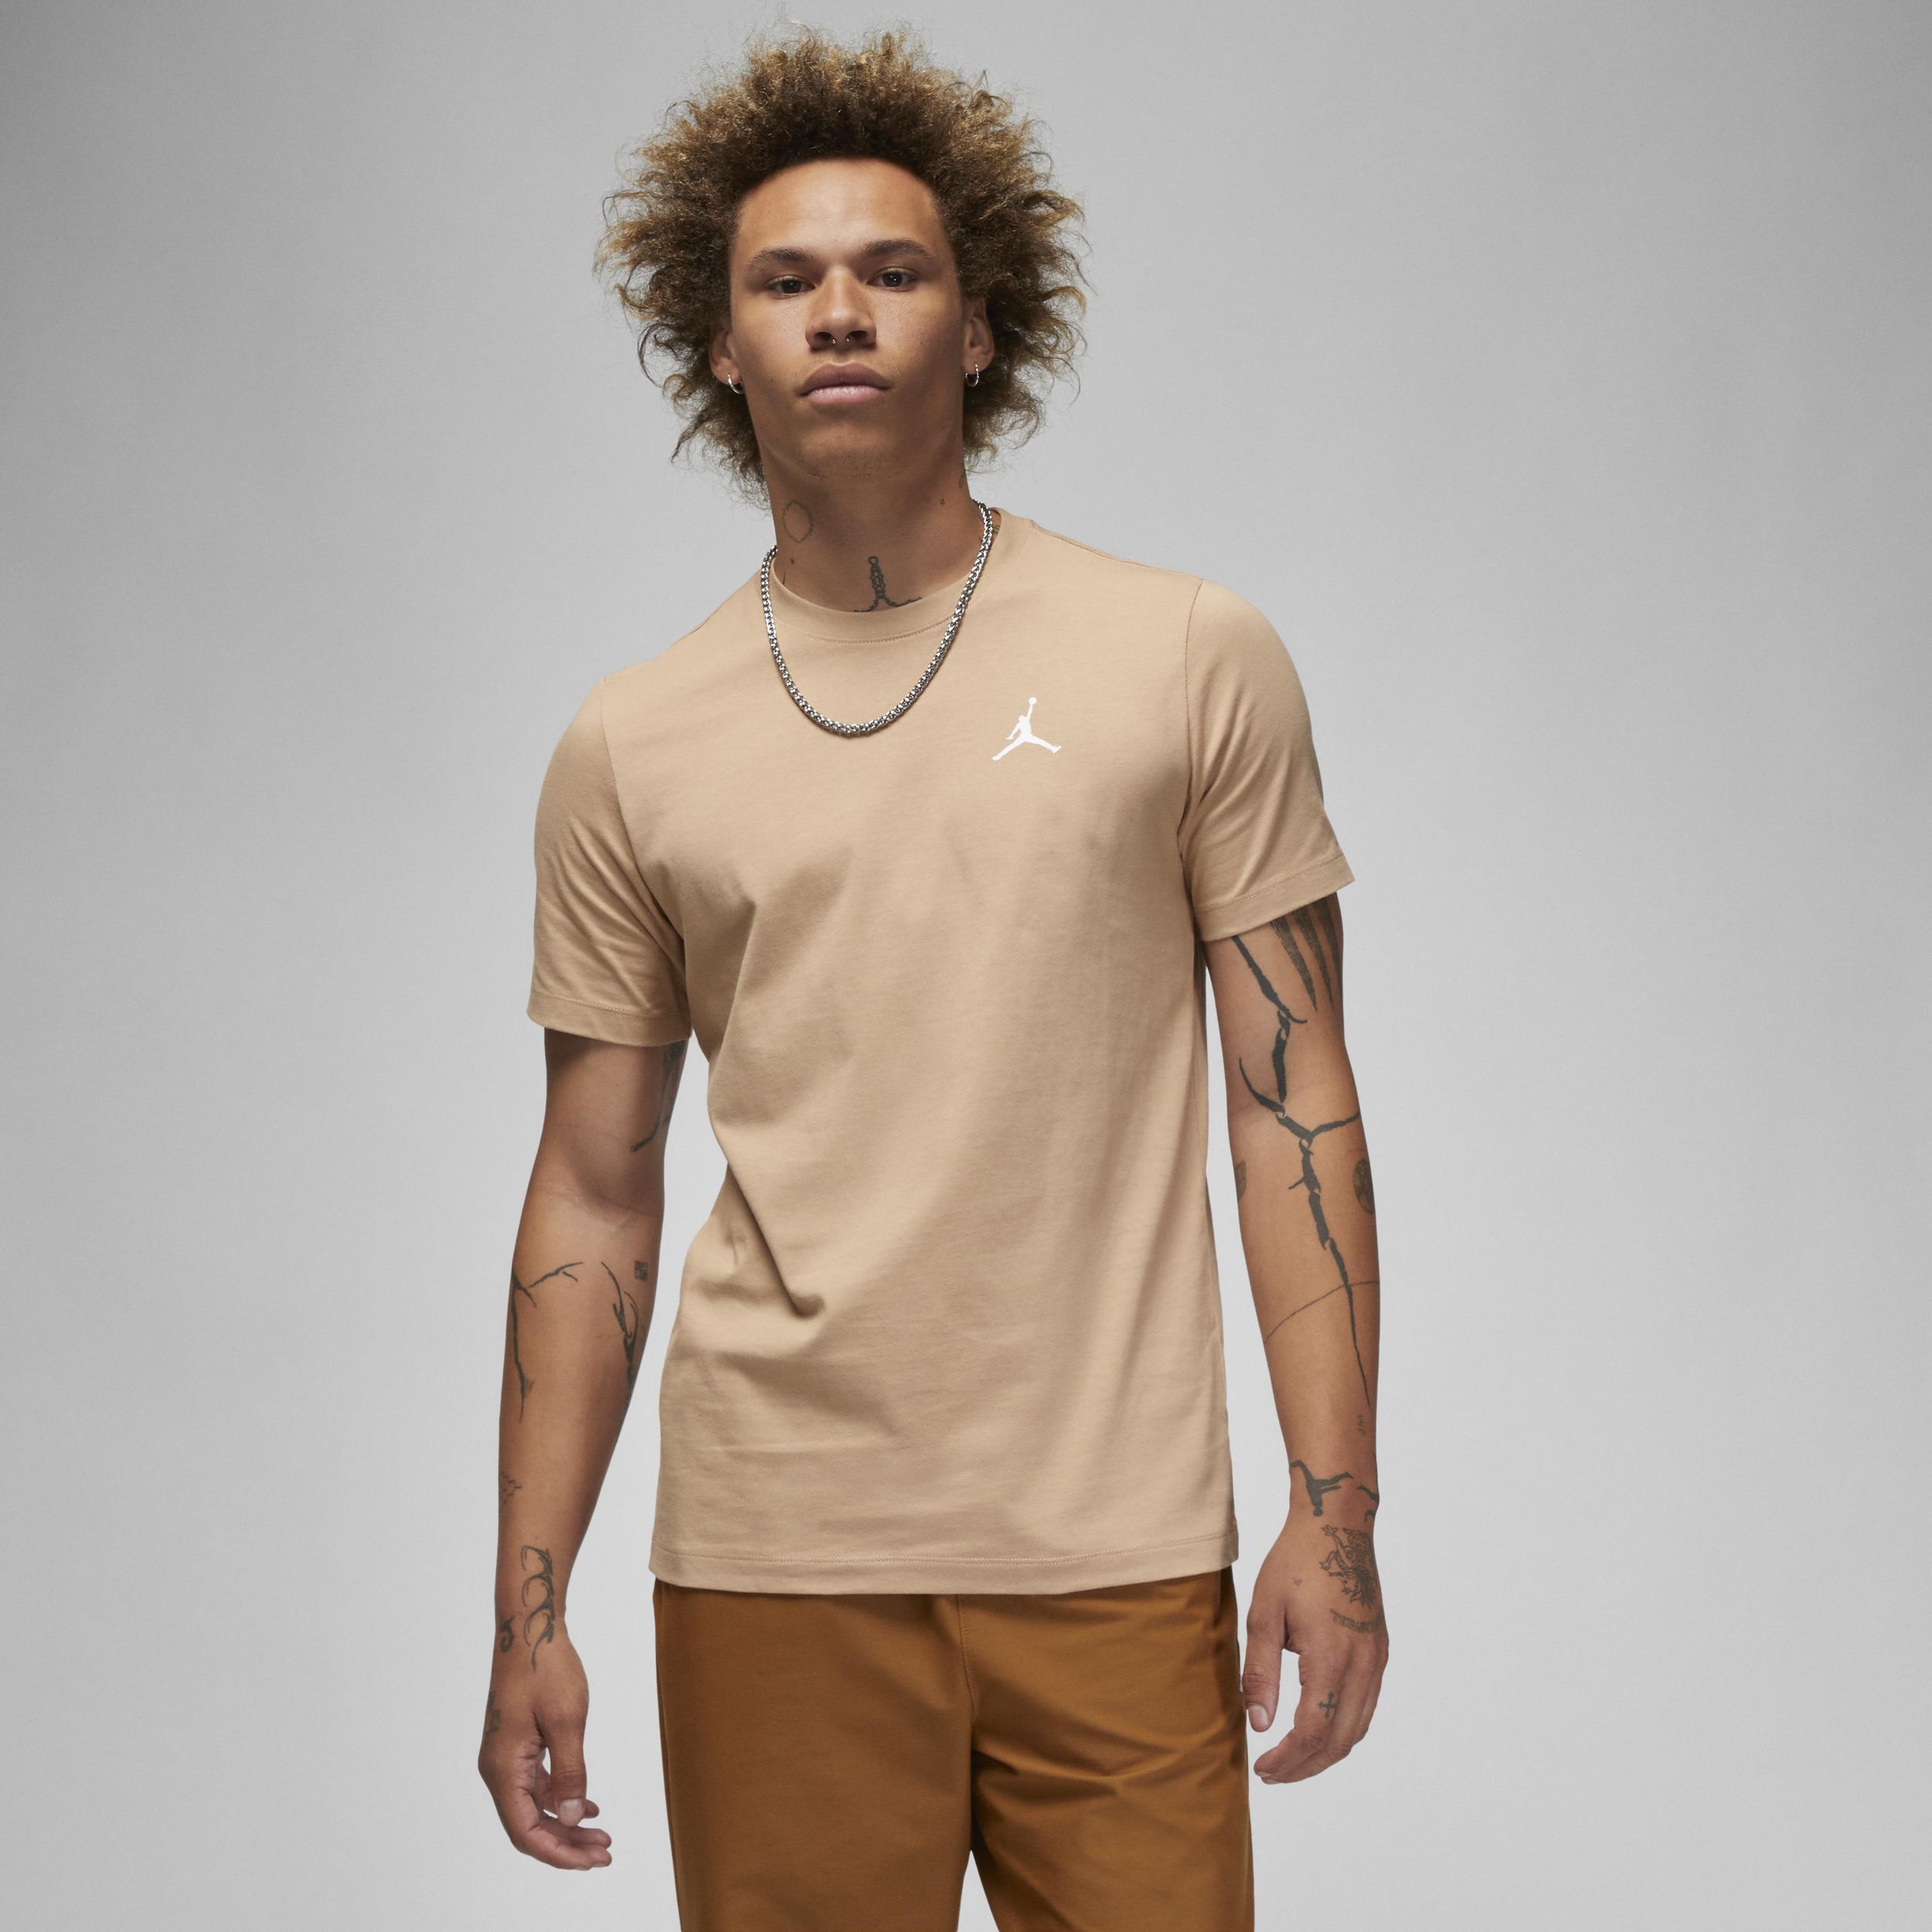 Nike Jordan Brand T-shirt in Natural for Men Lyst UK